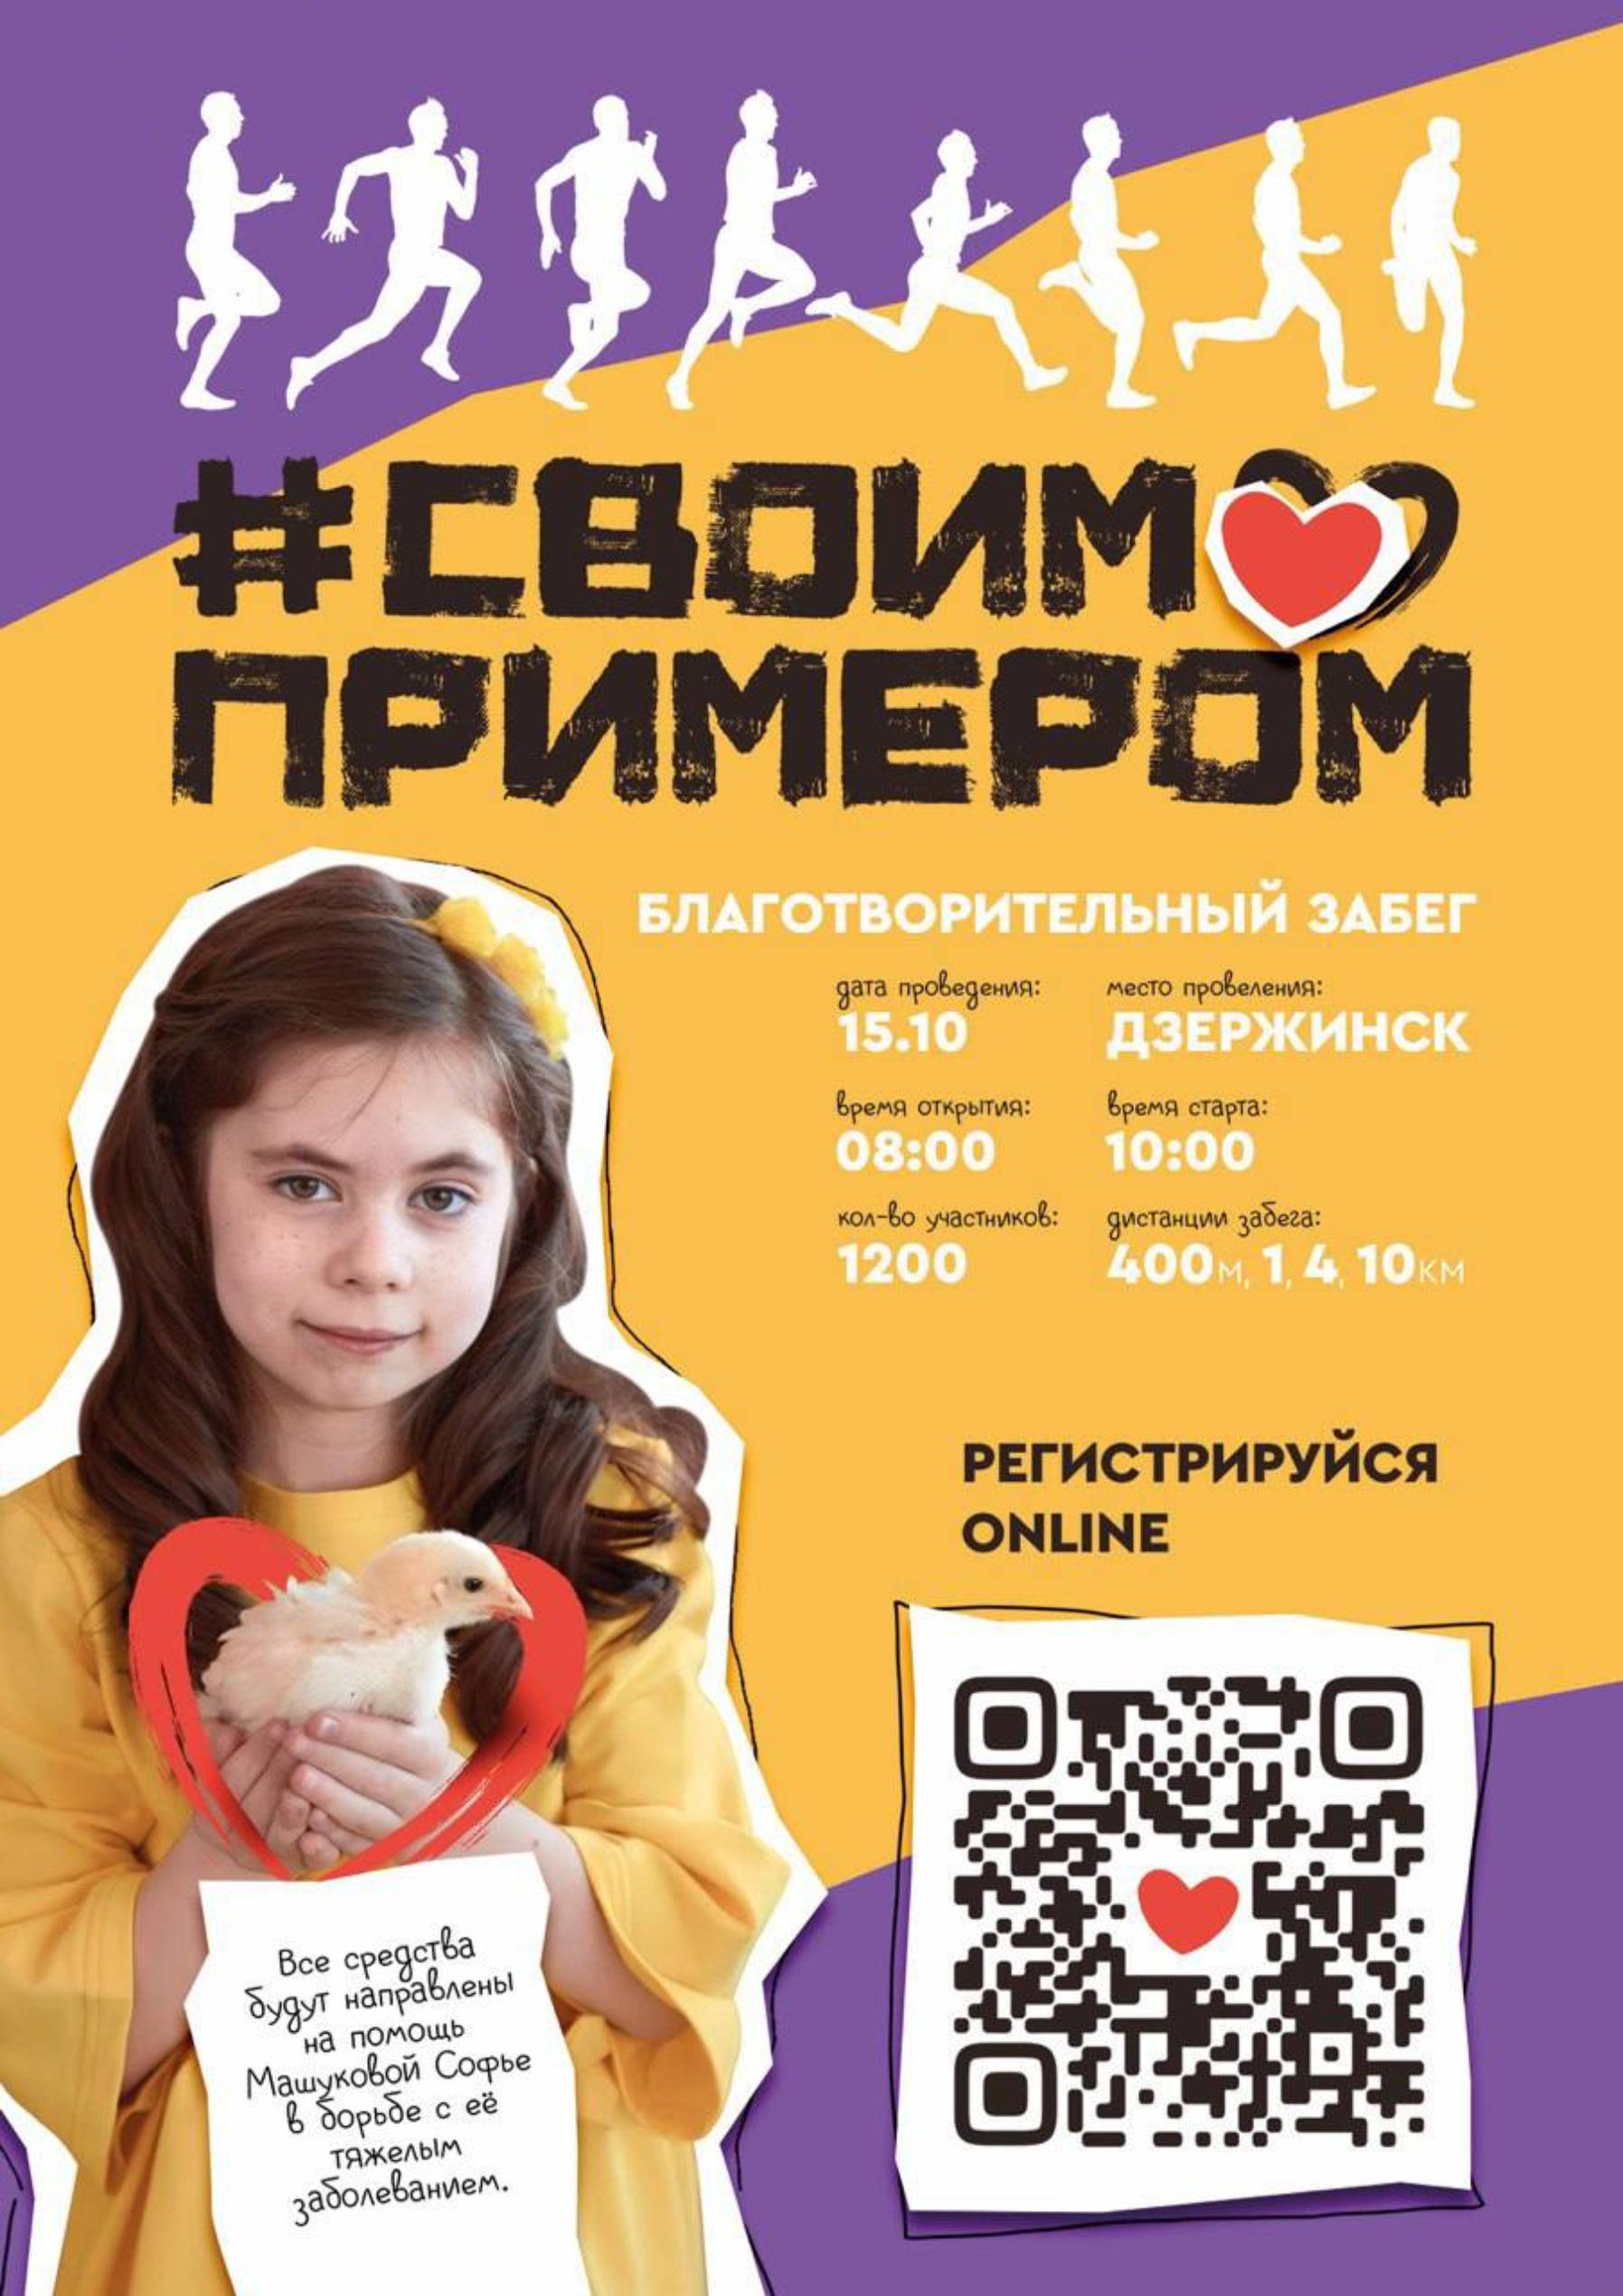 Благотворительный забег «Своим примером» состоится в Дзержинске 15 октября